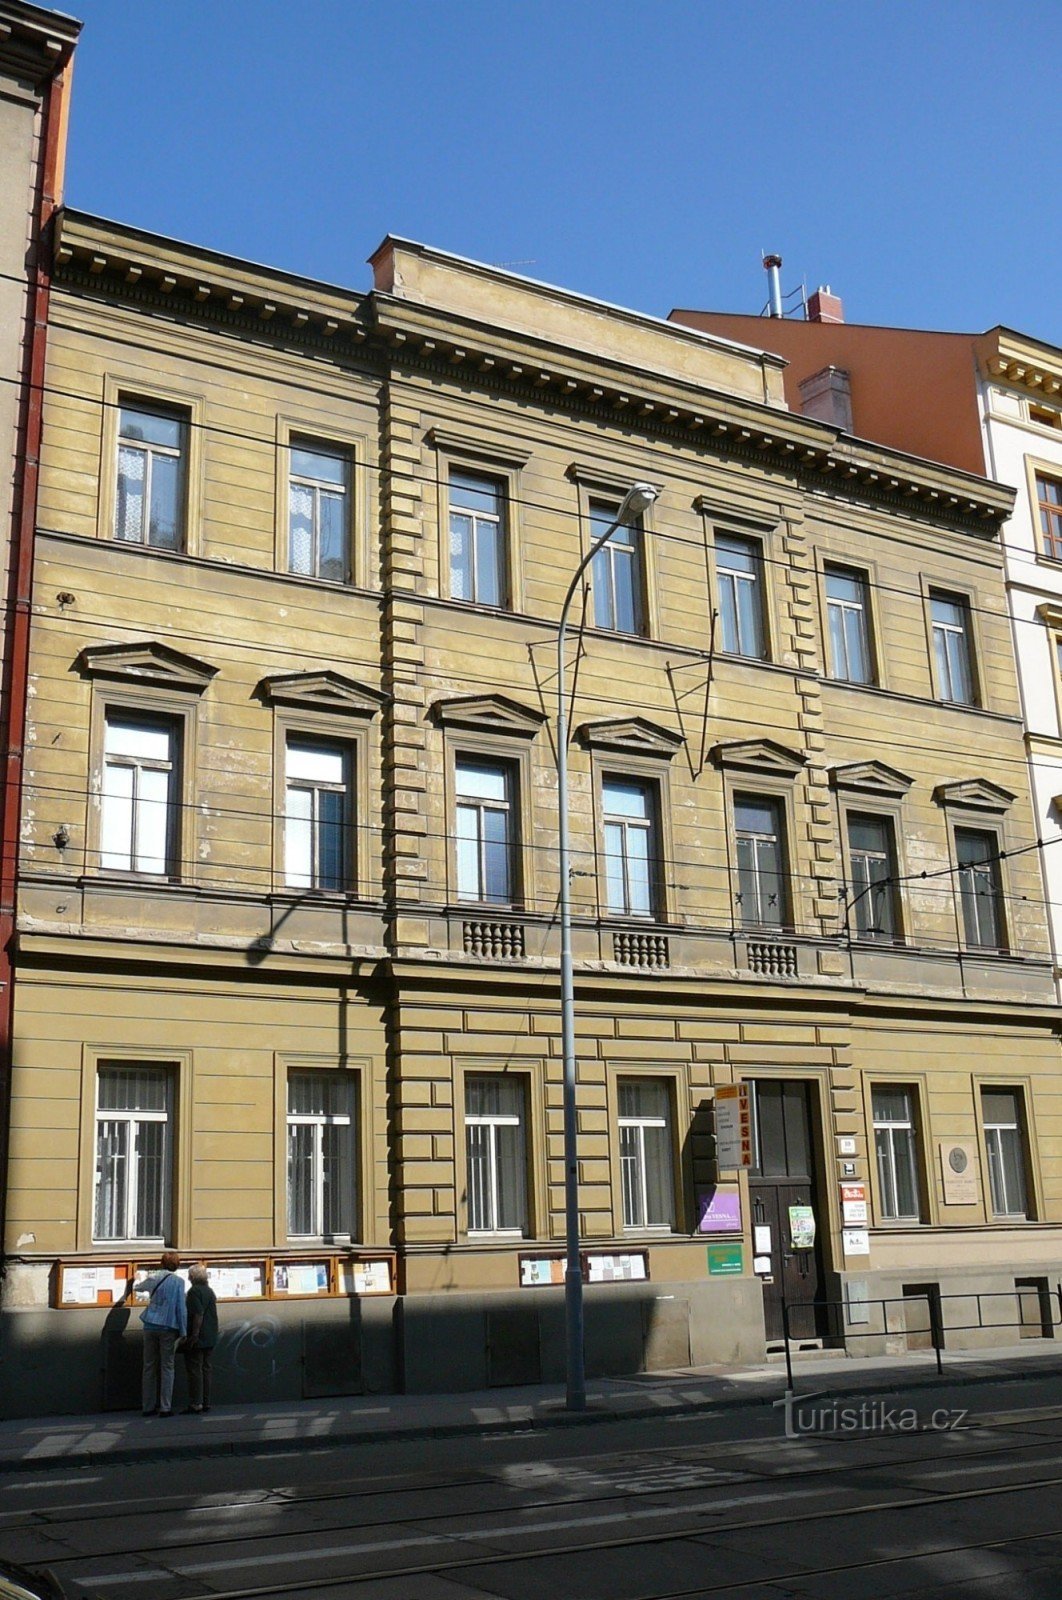 ウドルニー 10 番地の家、現在もヴェスナ協会が住んでおり、ユルコヴィッチの部屋はここで見ることができます